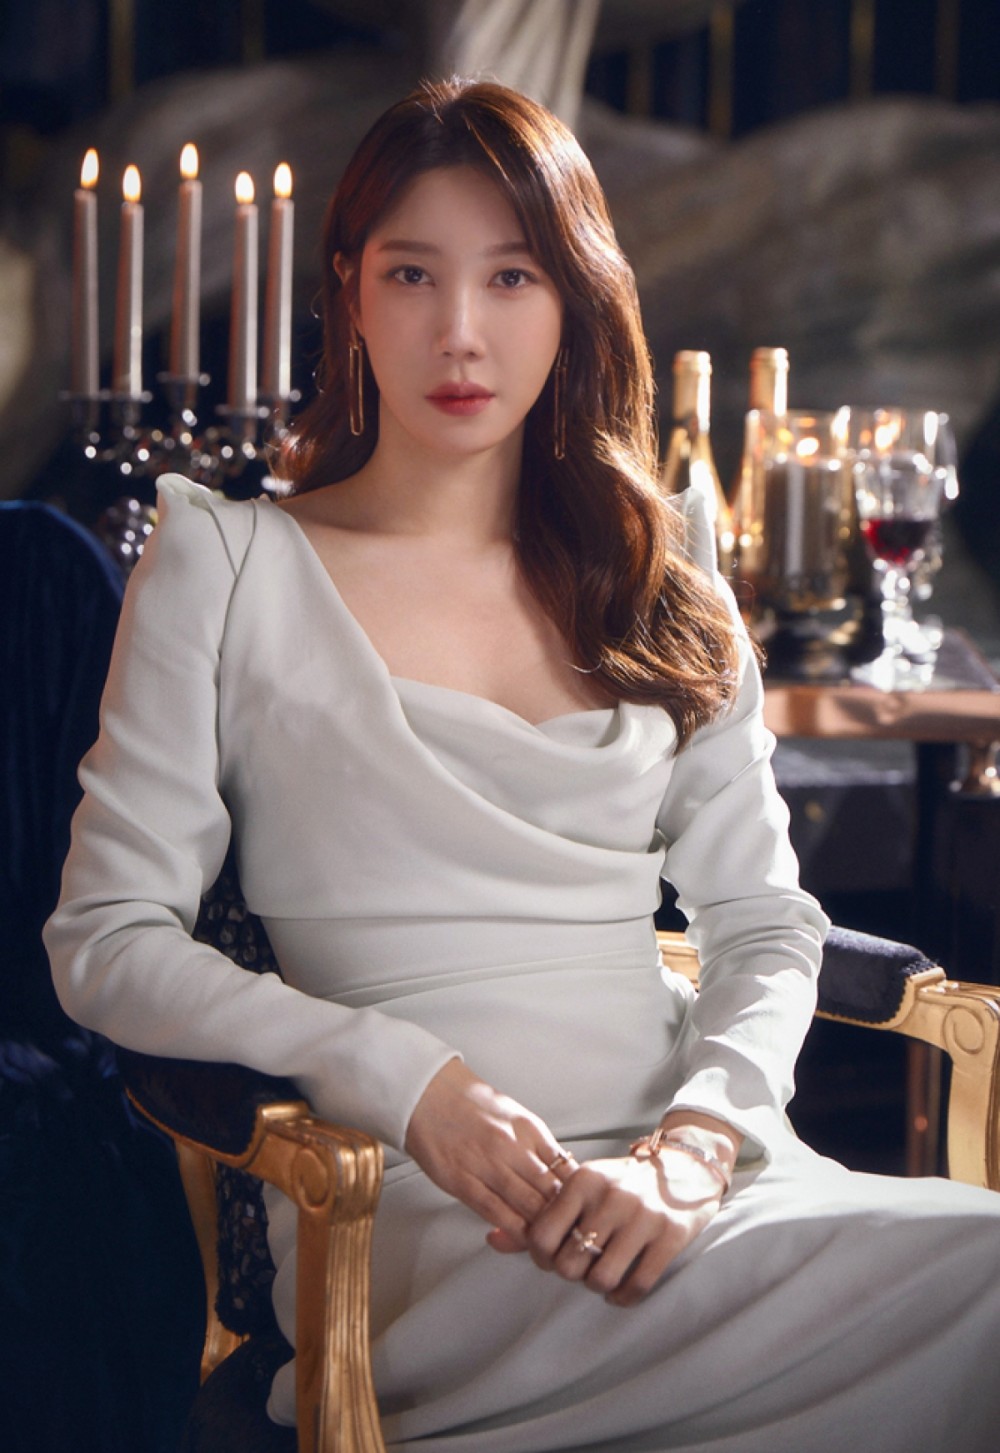 Penthouse phần 2 tập 2: "Chị đẹp" Lee Ji Ah chưa xuất hiện, Cheon Seo